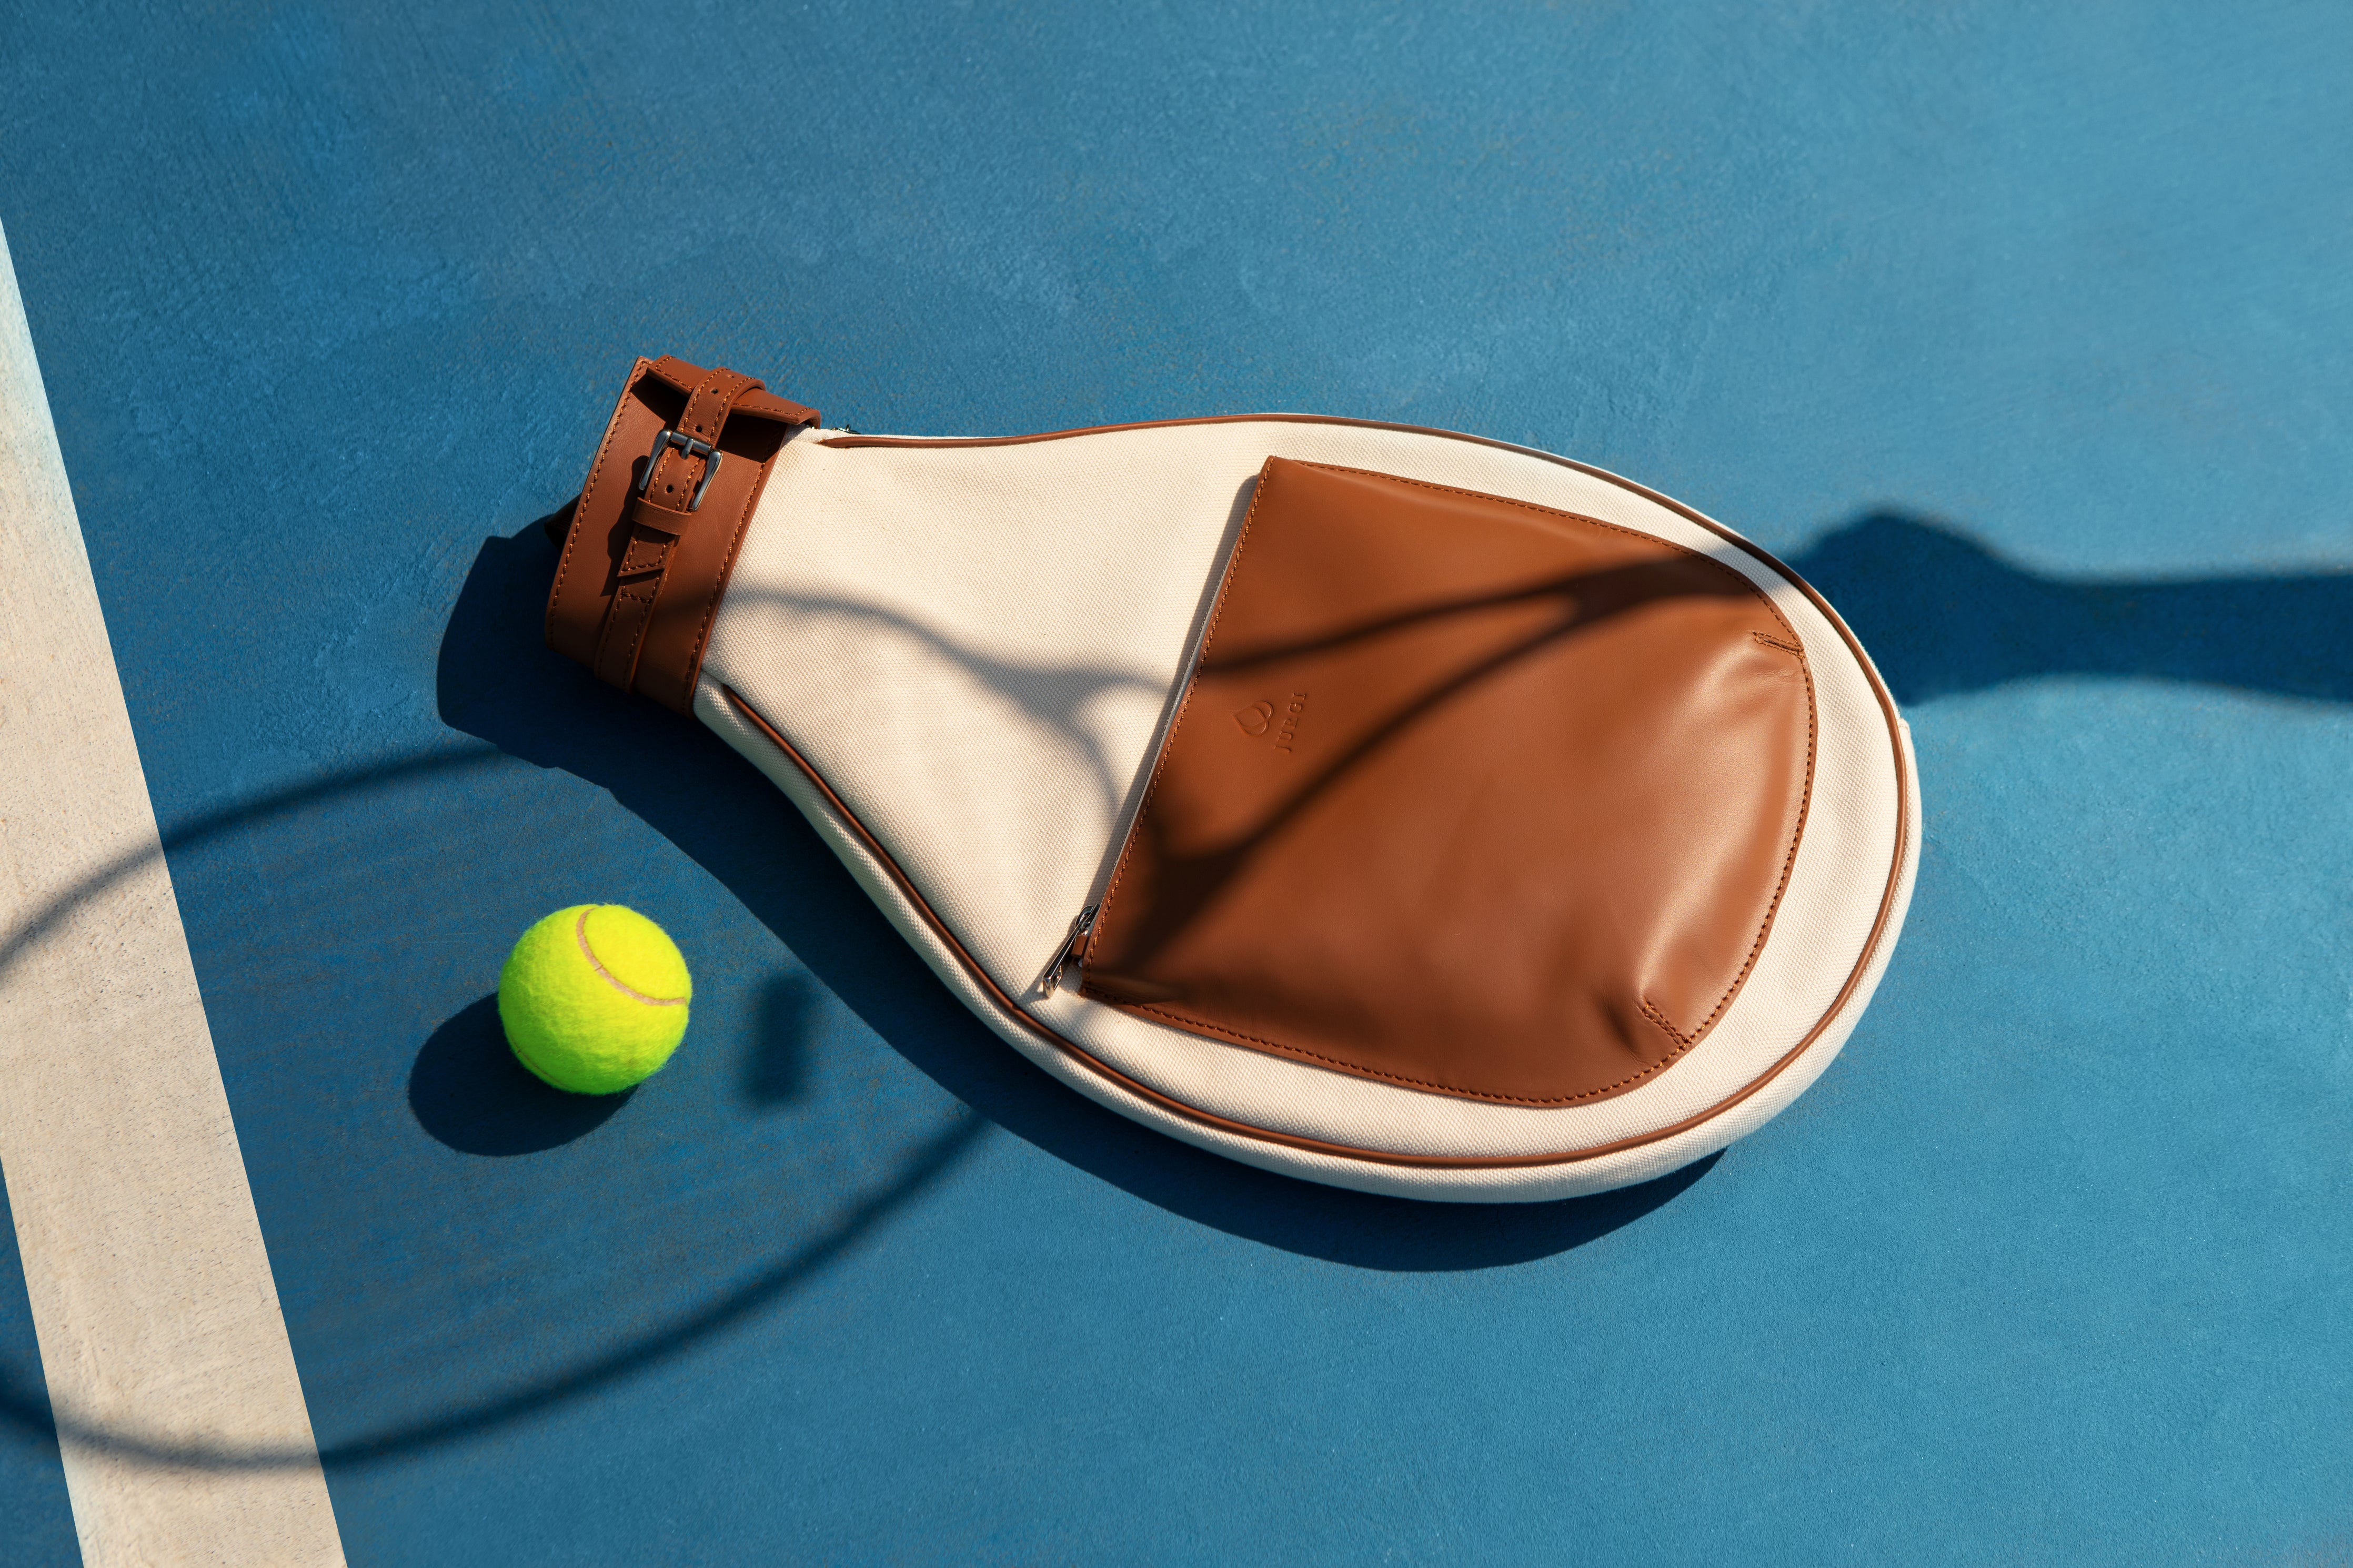 Canvas and calfskin tennis racket bag